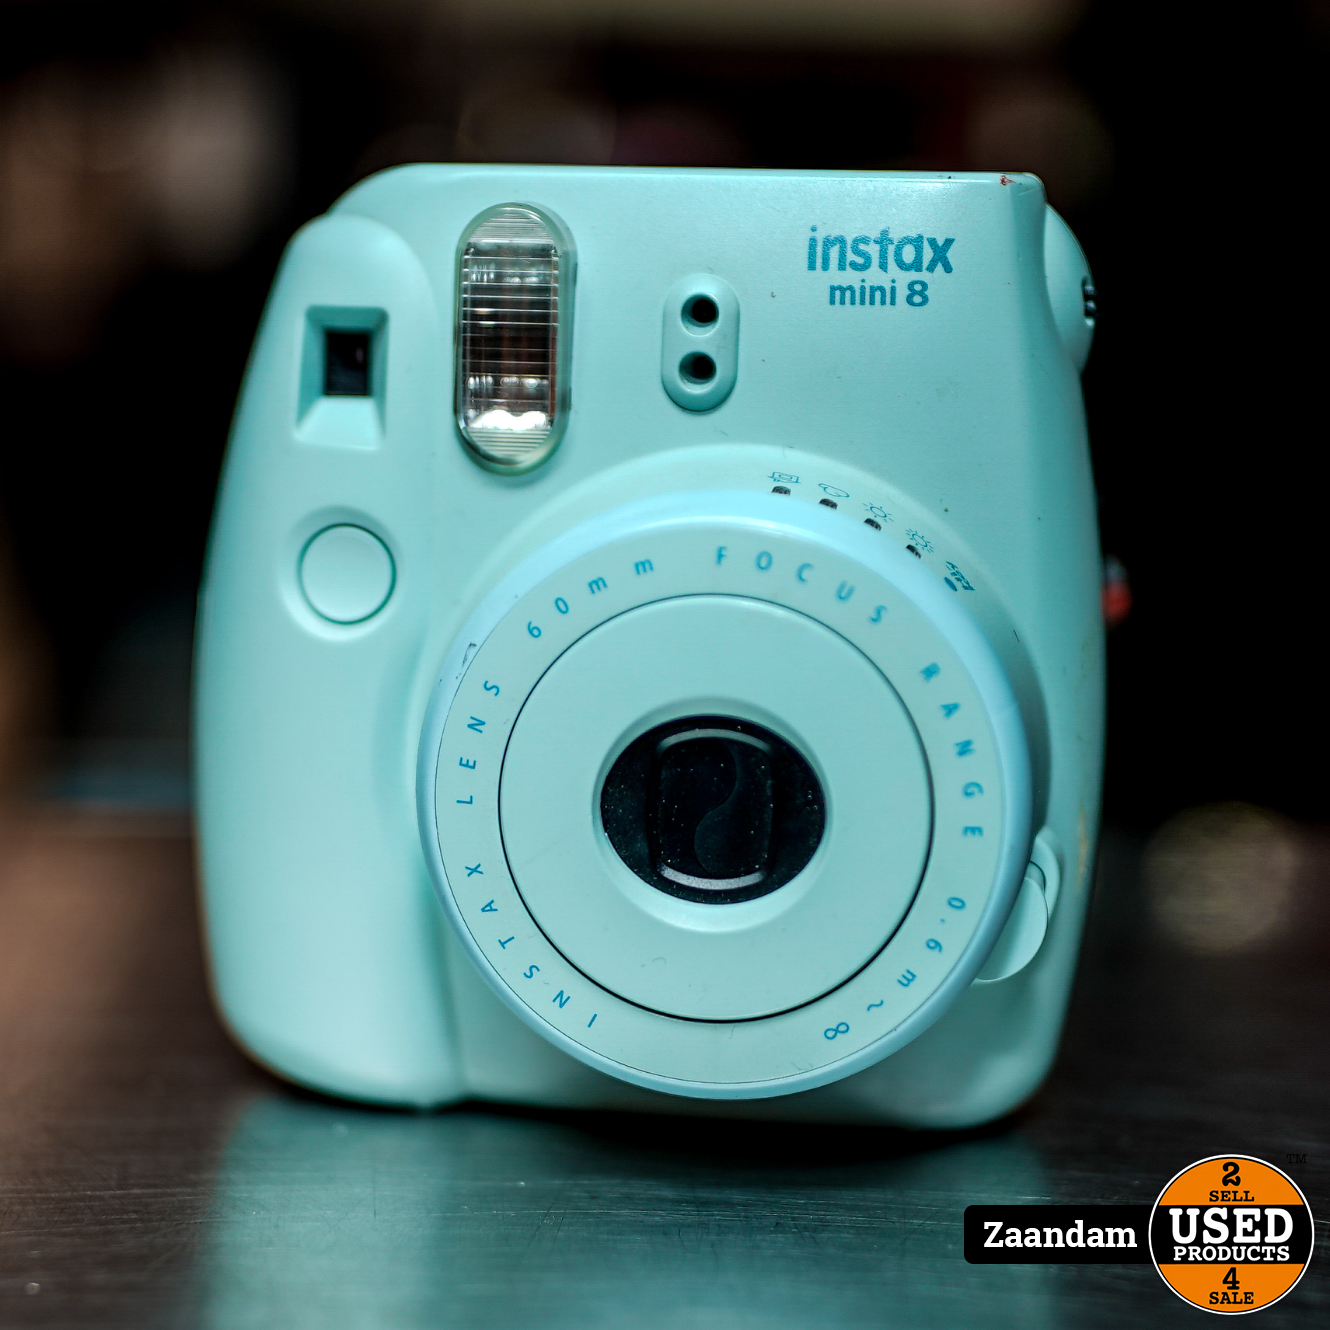 ijs Ruim Maladroit Fujifilm Instax Mini 8 Polaroid Camera | In nette staat - Used Products  Zaandam